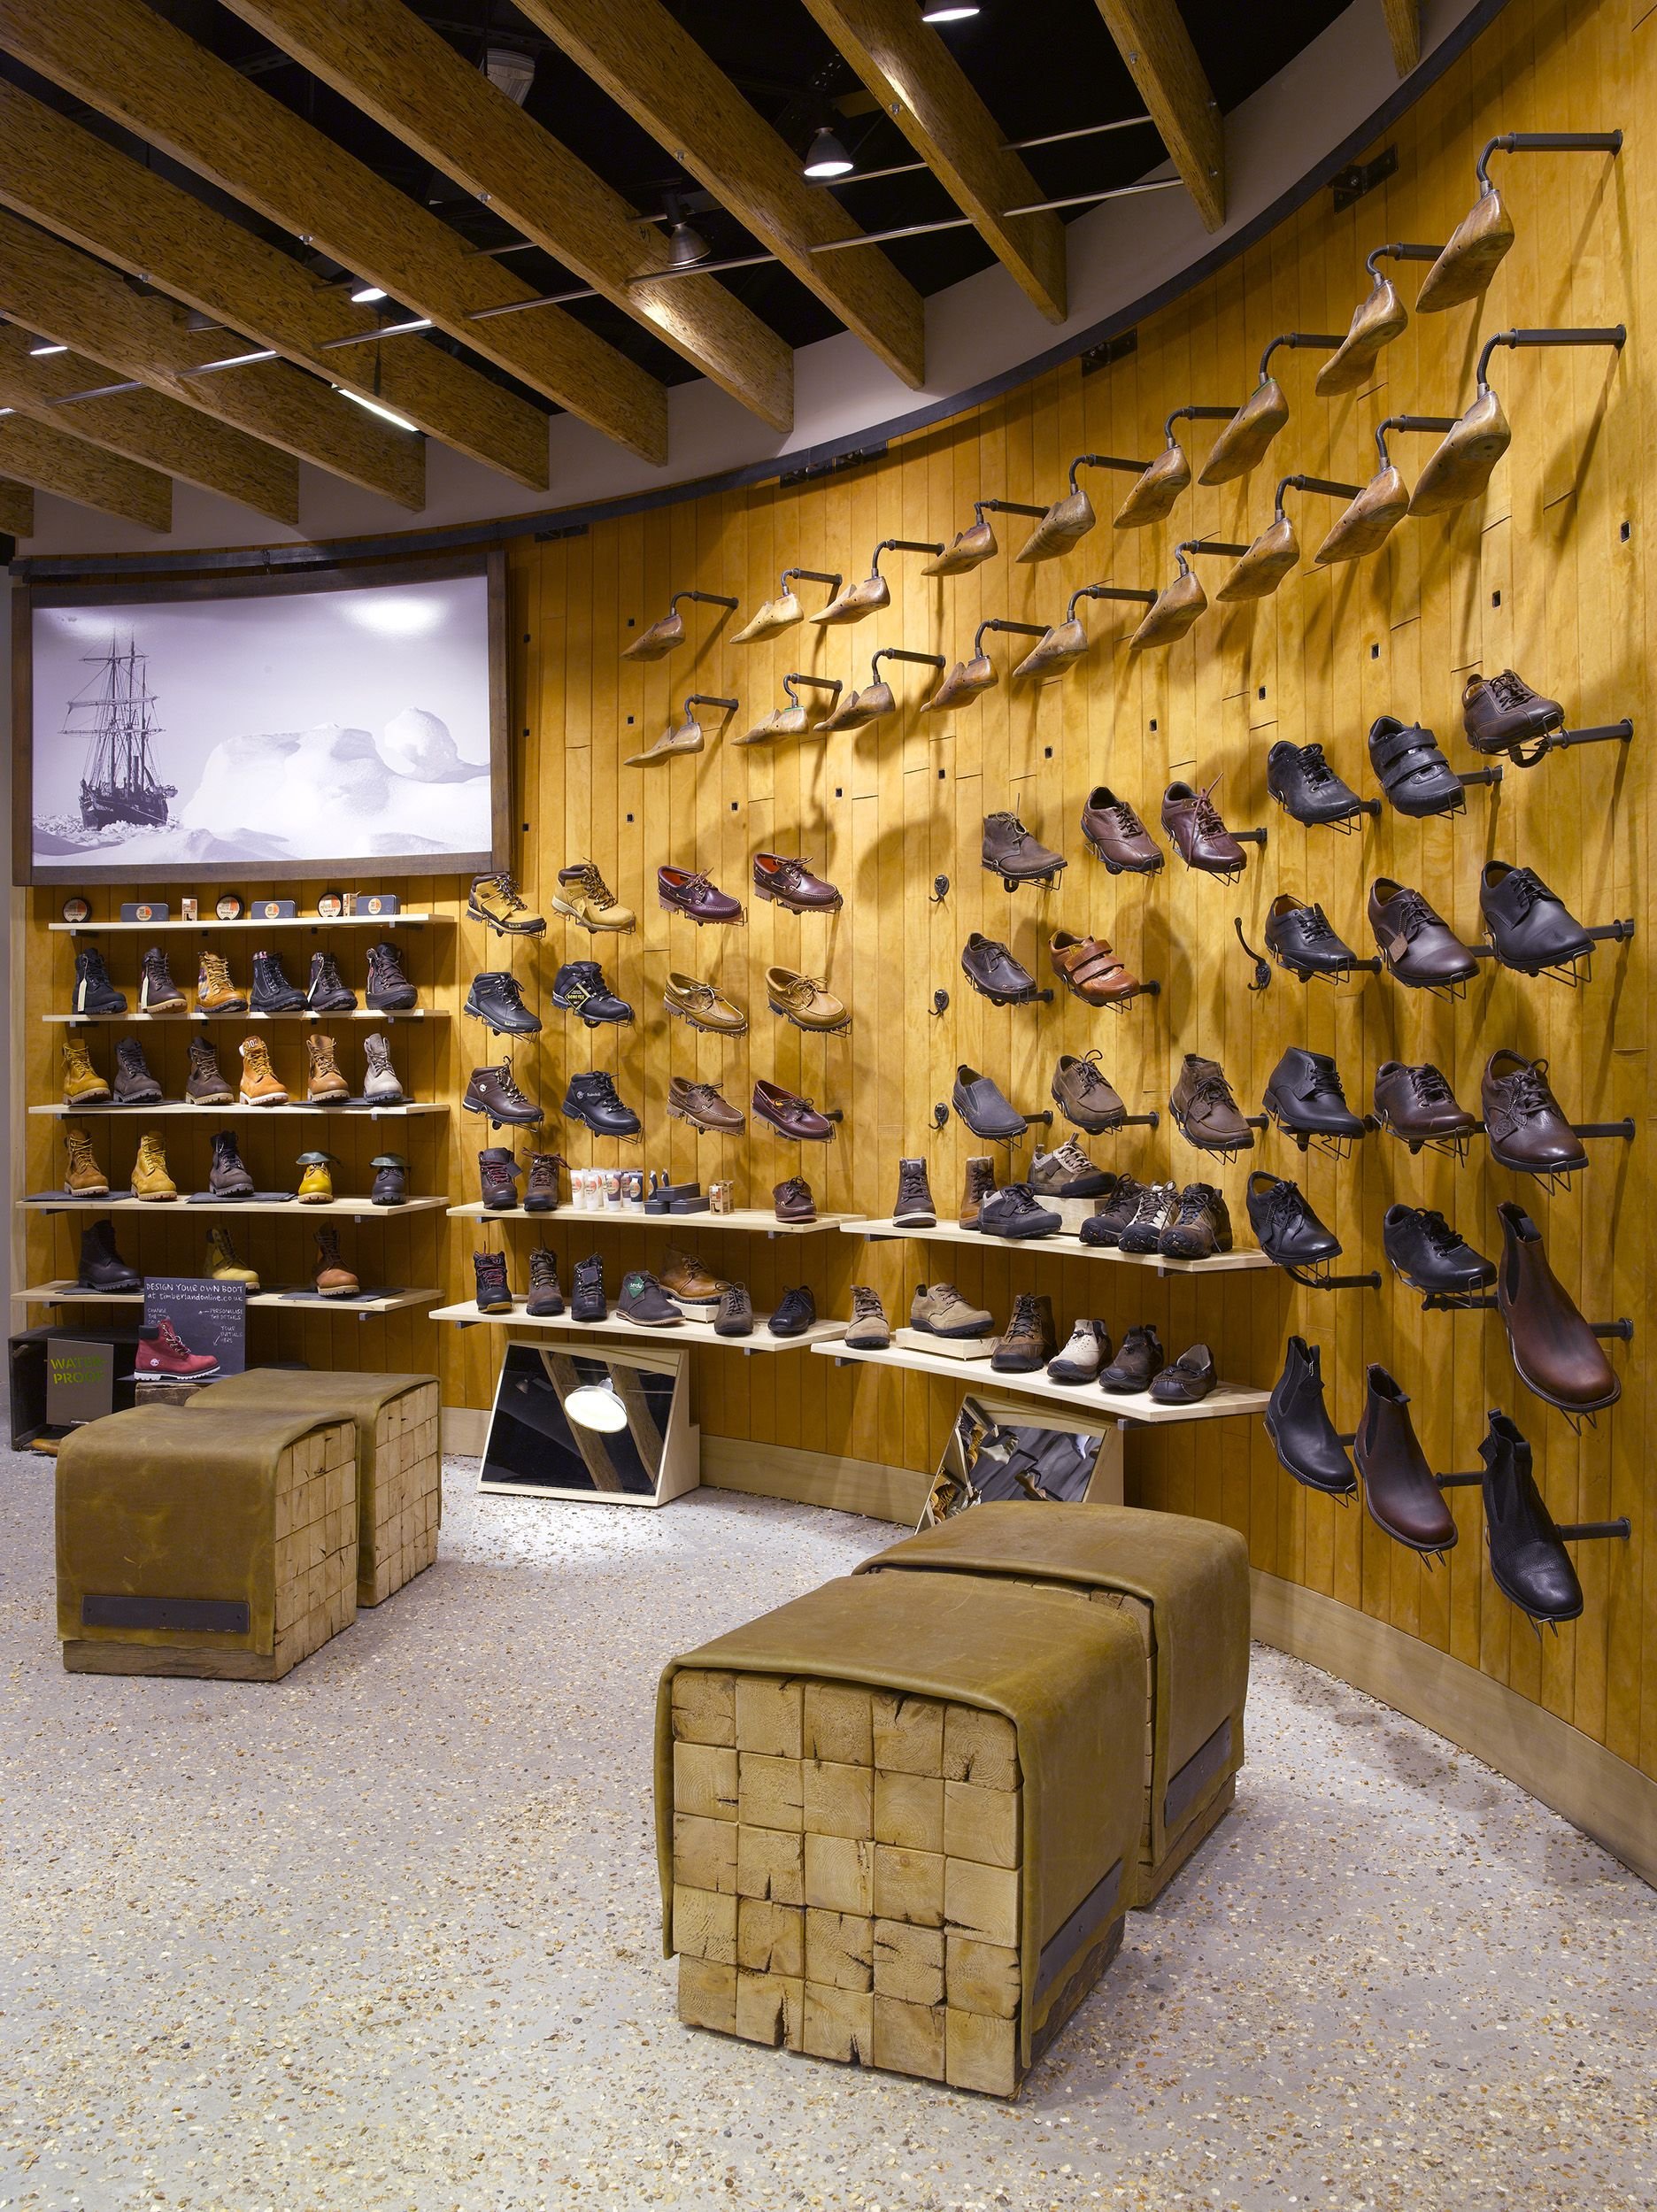 Универмаг обуви. Timberland Butik. Интерьер магазина обуви. Интерьер обувного бутика. Мебель для магазина обуви.